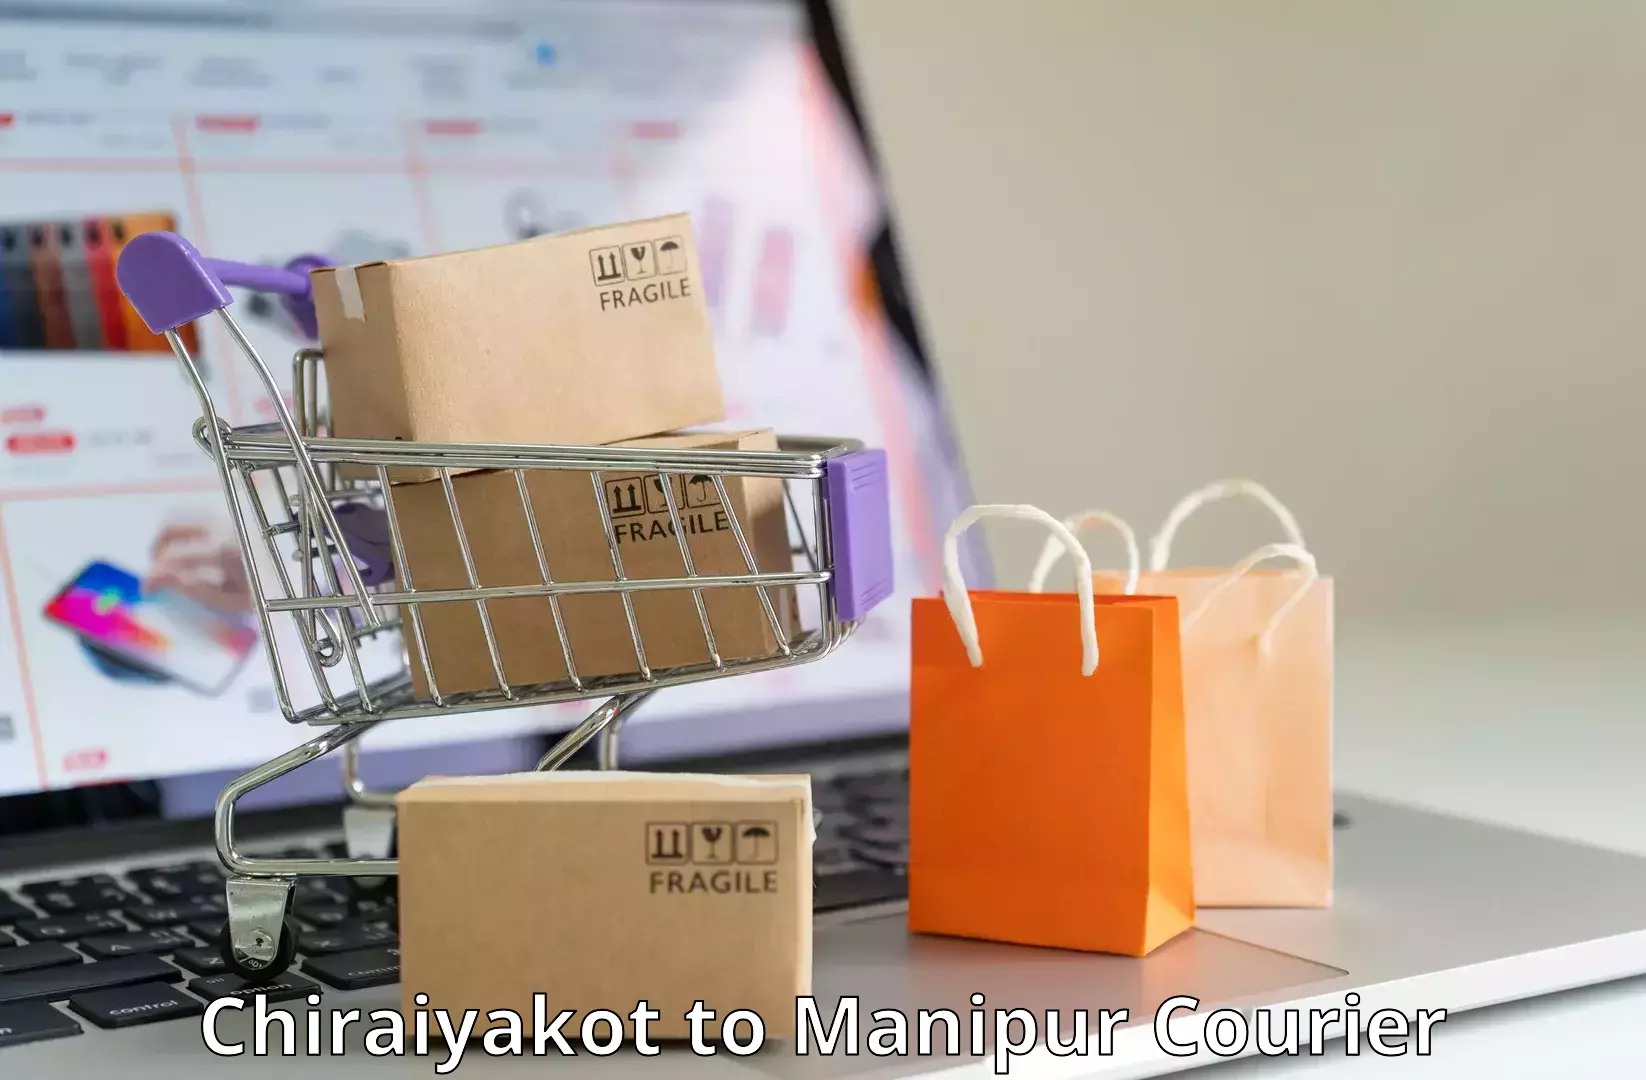 High-capacity courier solutions Chiraiyakot to Moirang